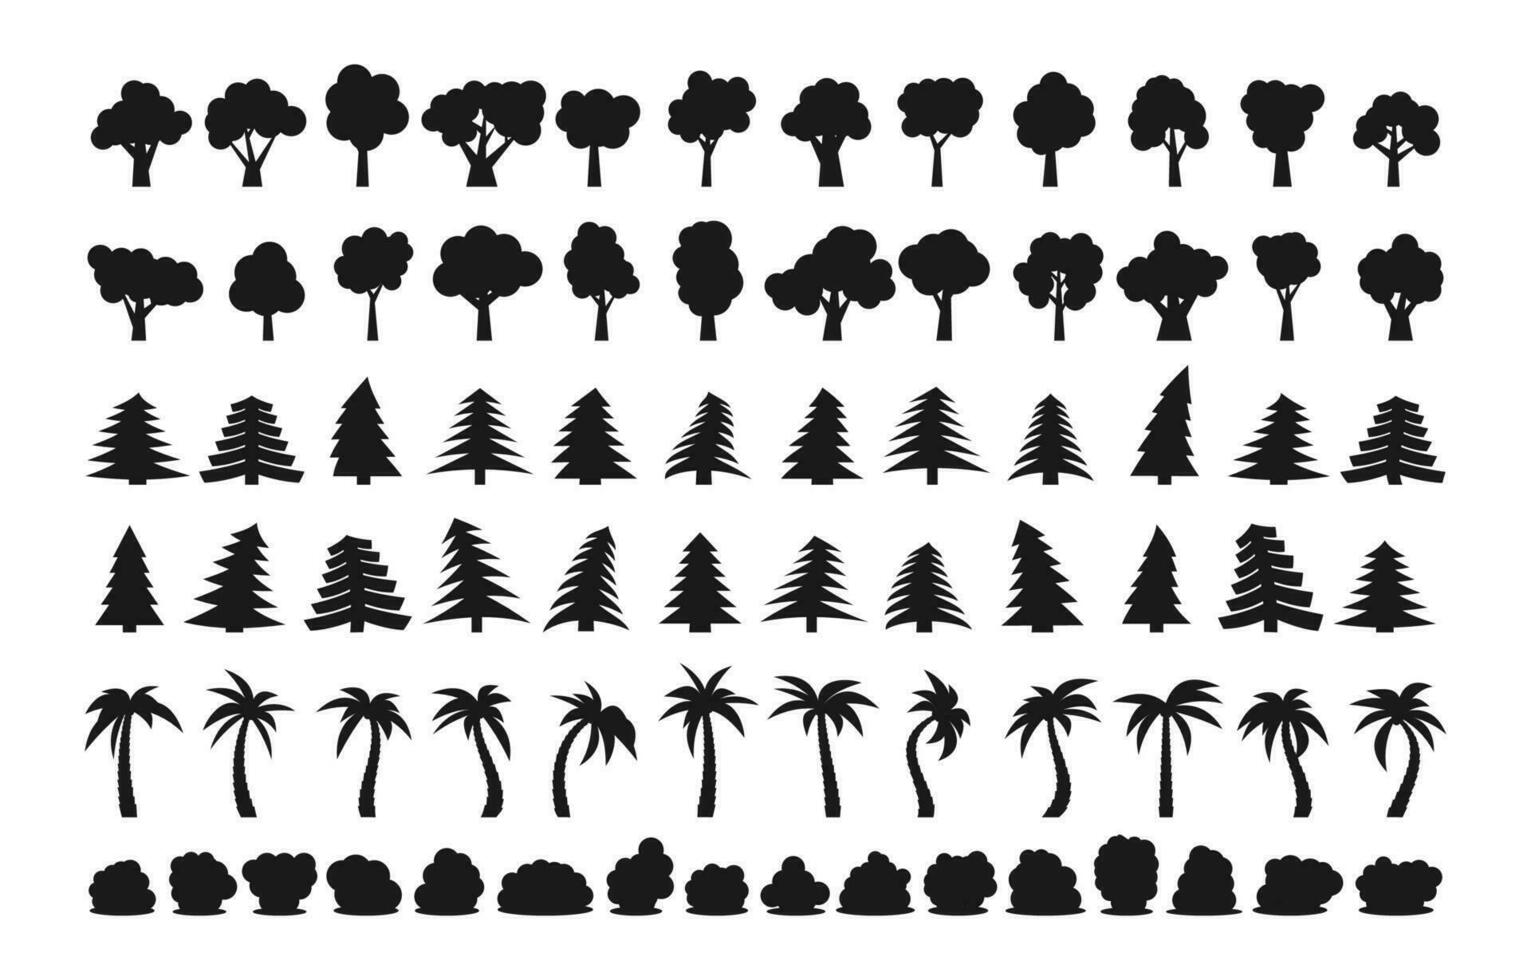 groot reeks van verschillend donker silhouetten van bomen en struiken. vector illustratie